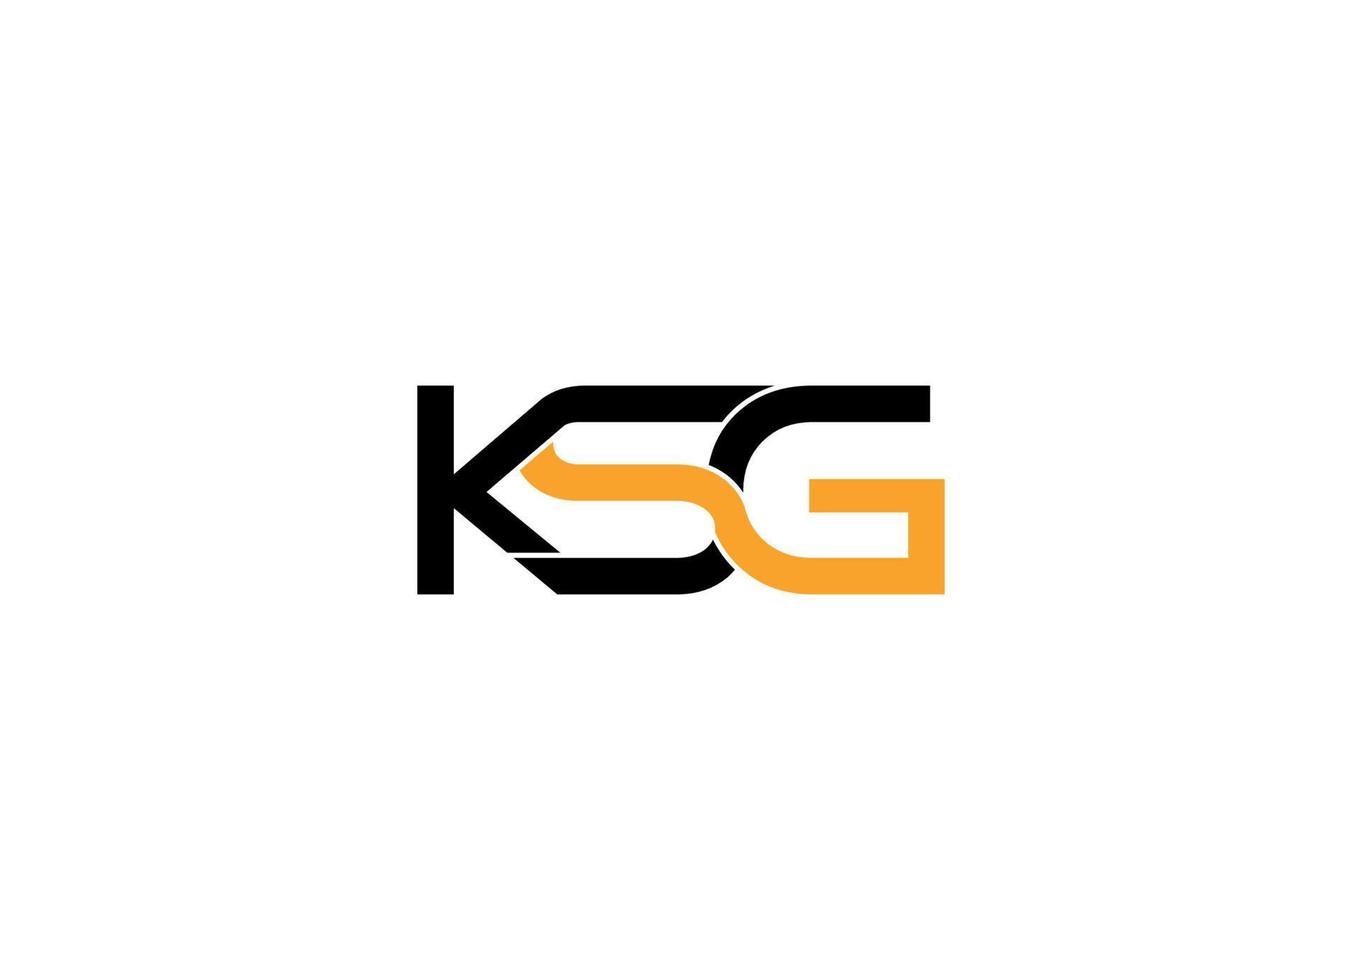 ksg logo vector ontwerpsjabloon met witte achtergrond